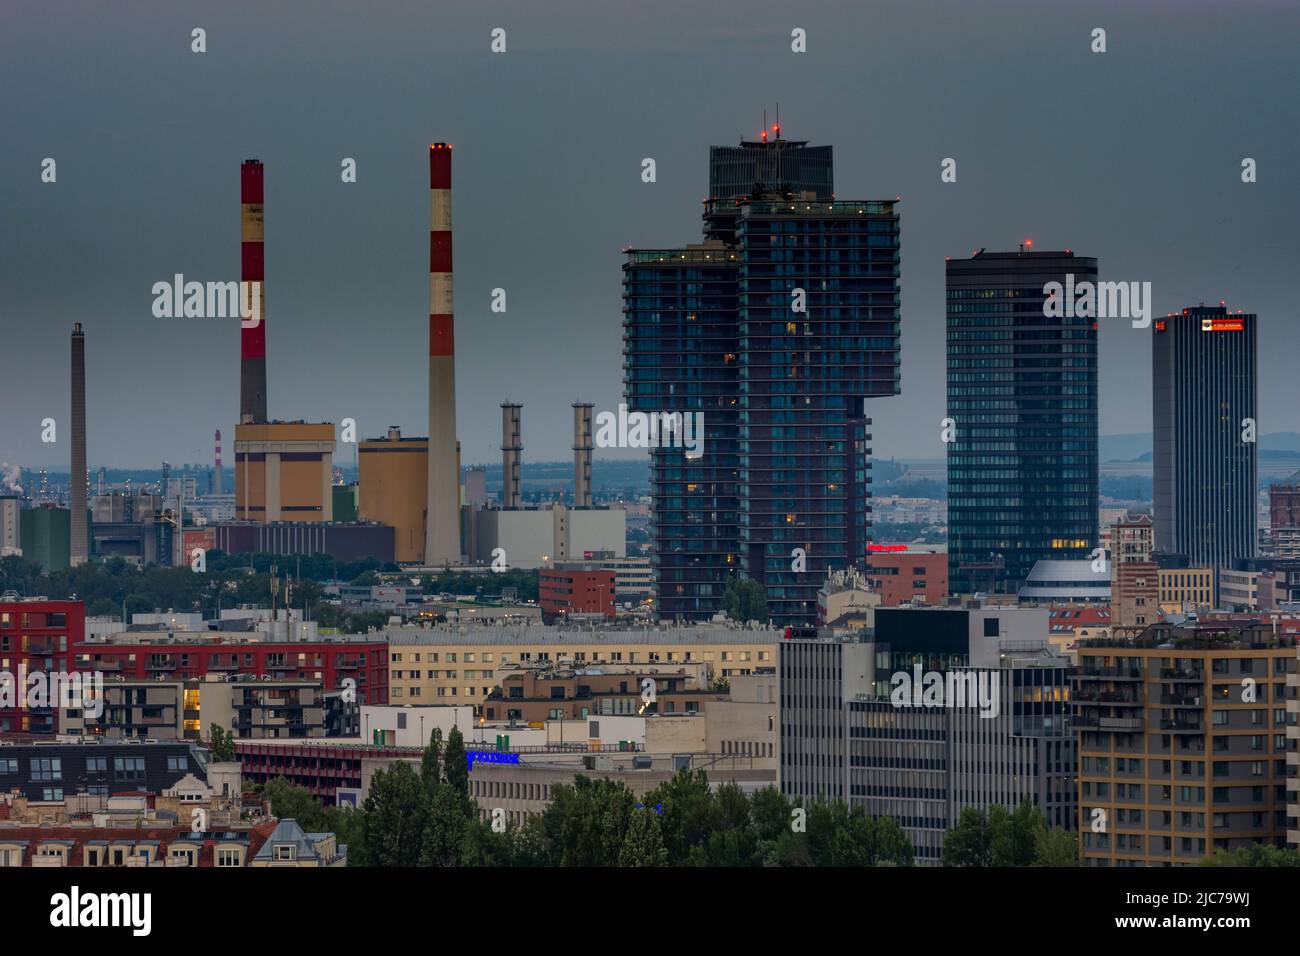 Viena: Chimeneas de la central eléctrica, torres Triiiple de gran altura, torre Orbi, sede central de Wiener Stadtwerke (de izquierda a derecha) Foto de stock